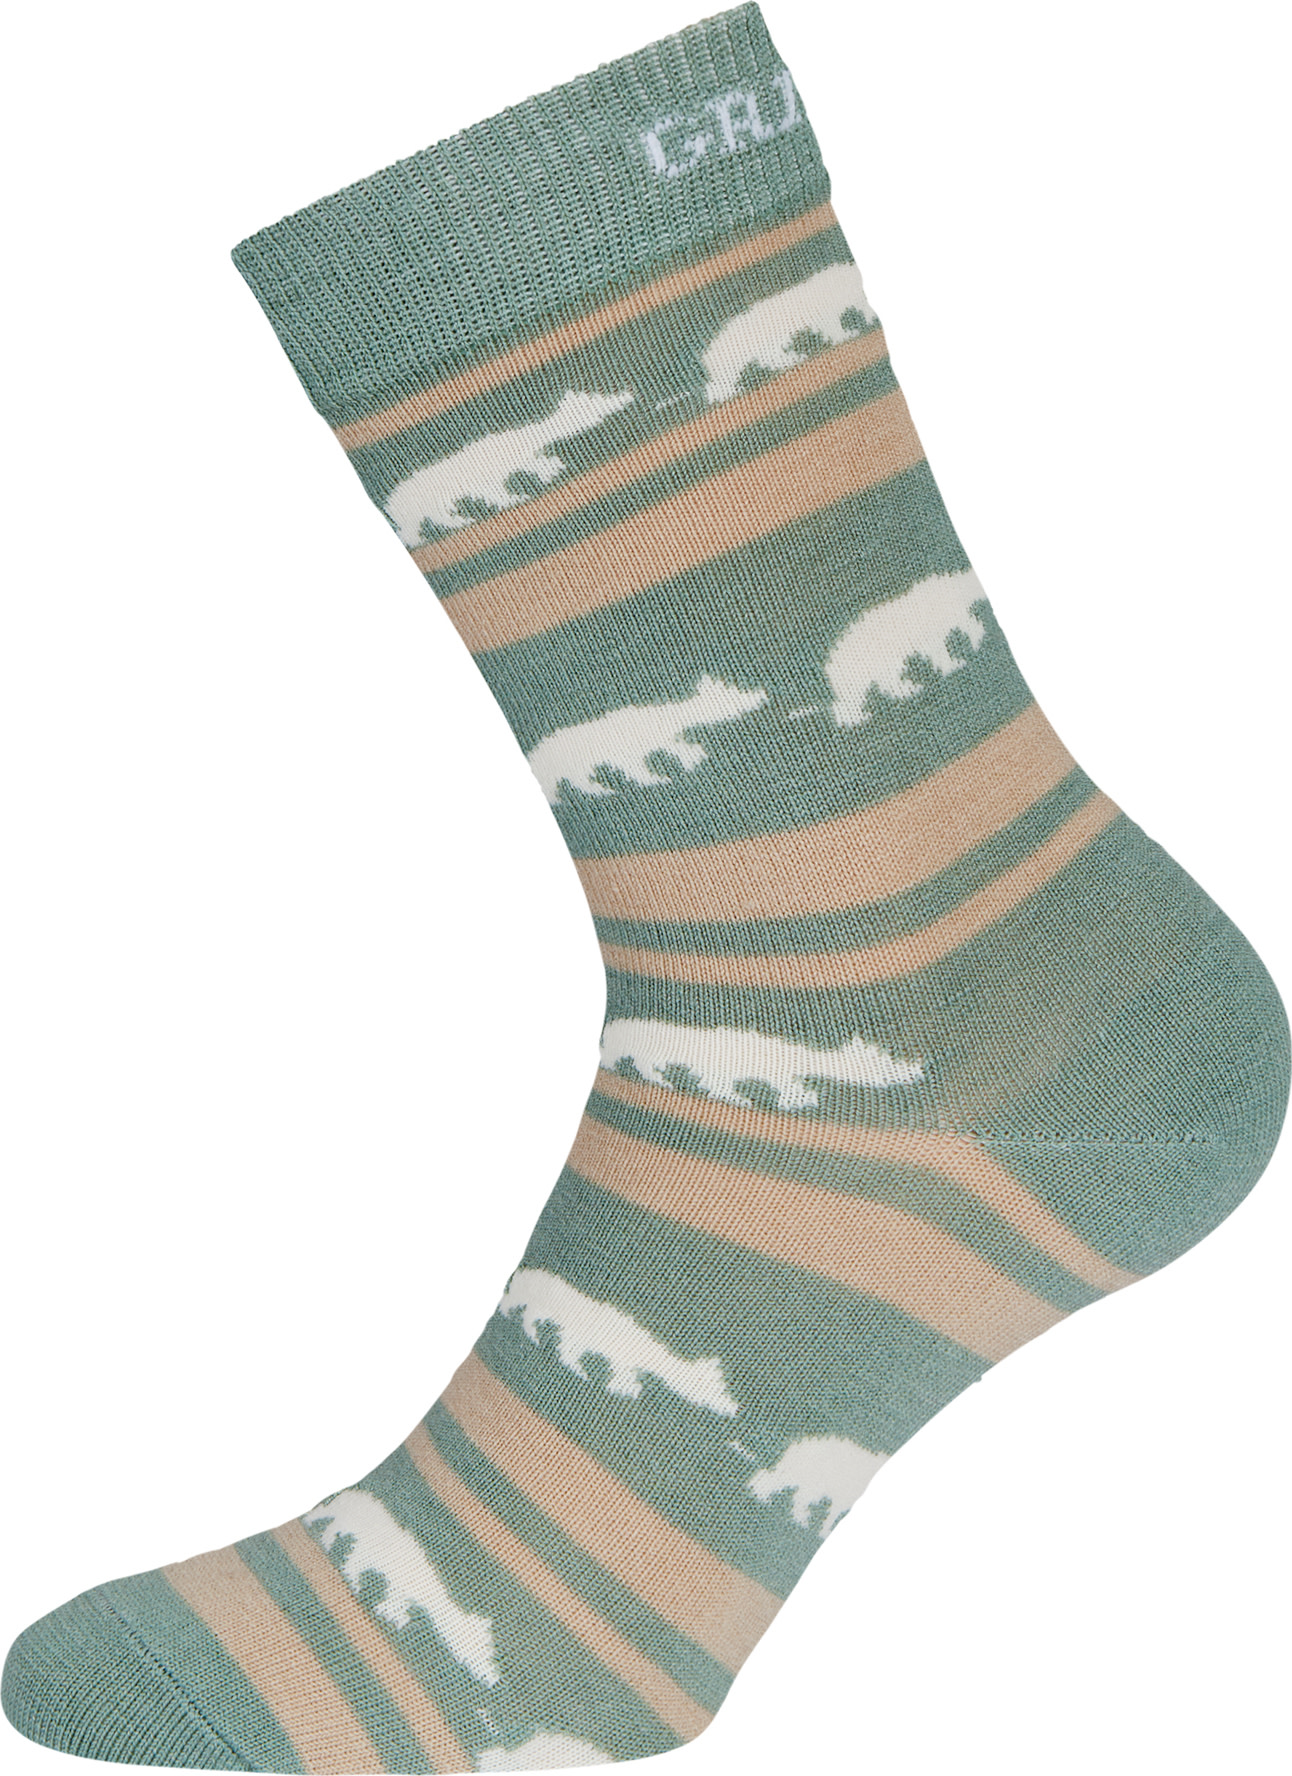 Gridarmor Striped Bear Merino Socks Green Bay